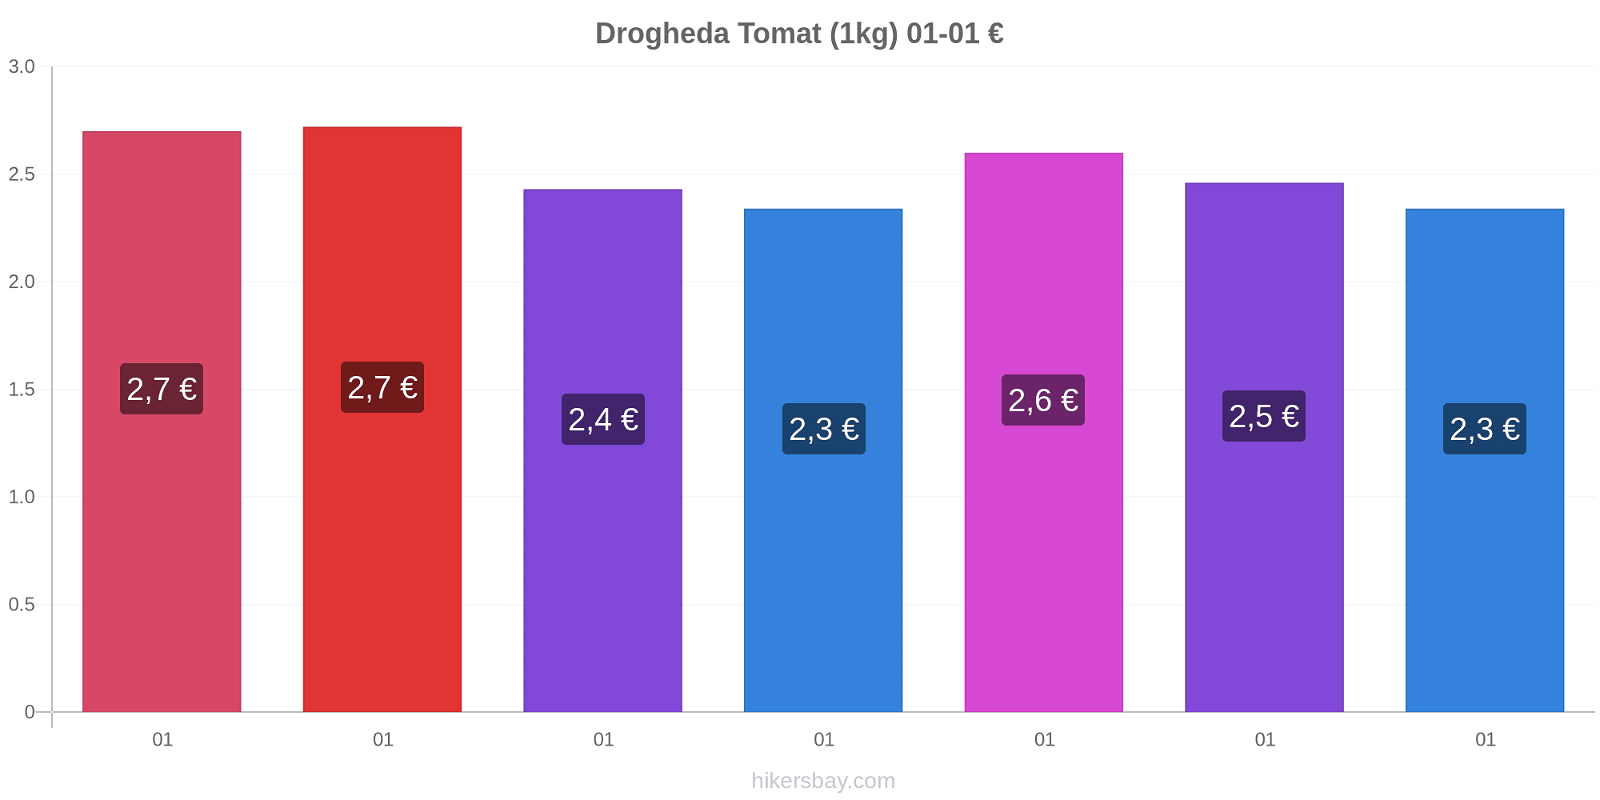 Drogheda prisförändringar Tomat (1kg) hikersbay.com